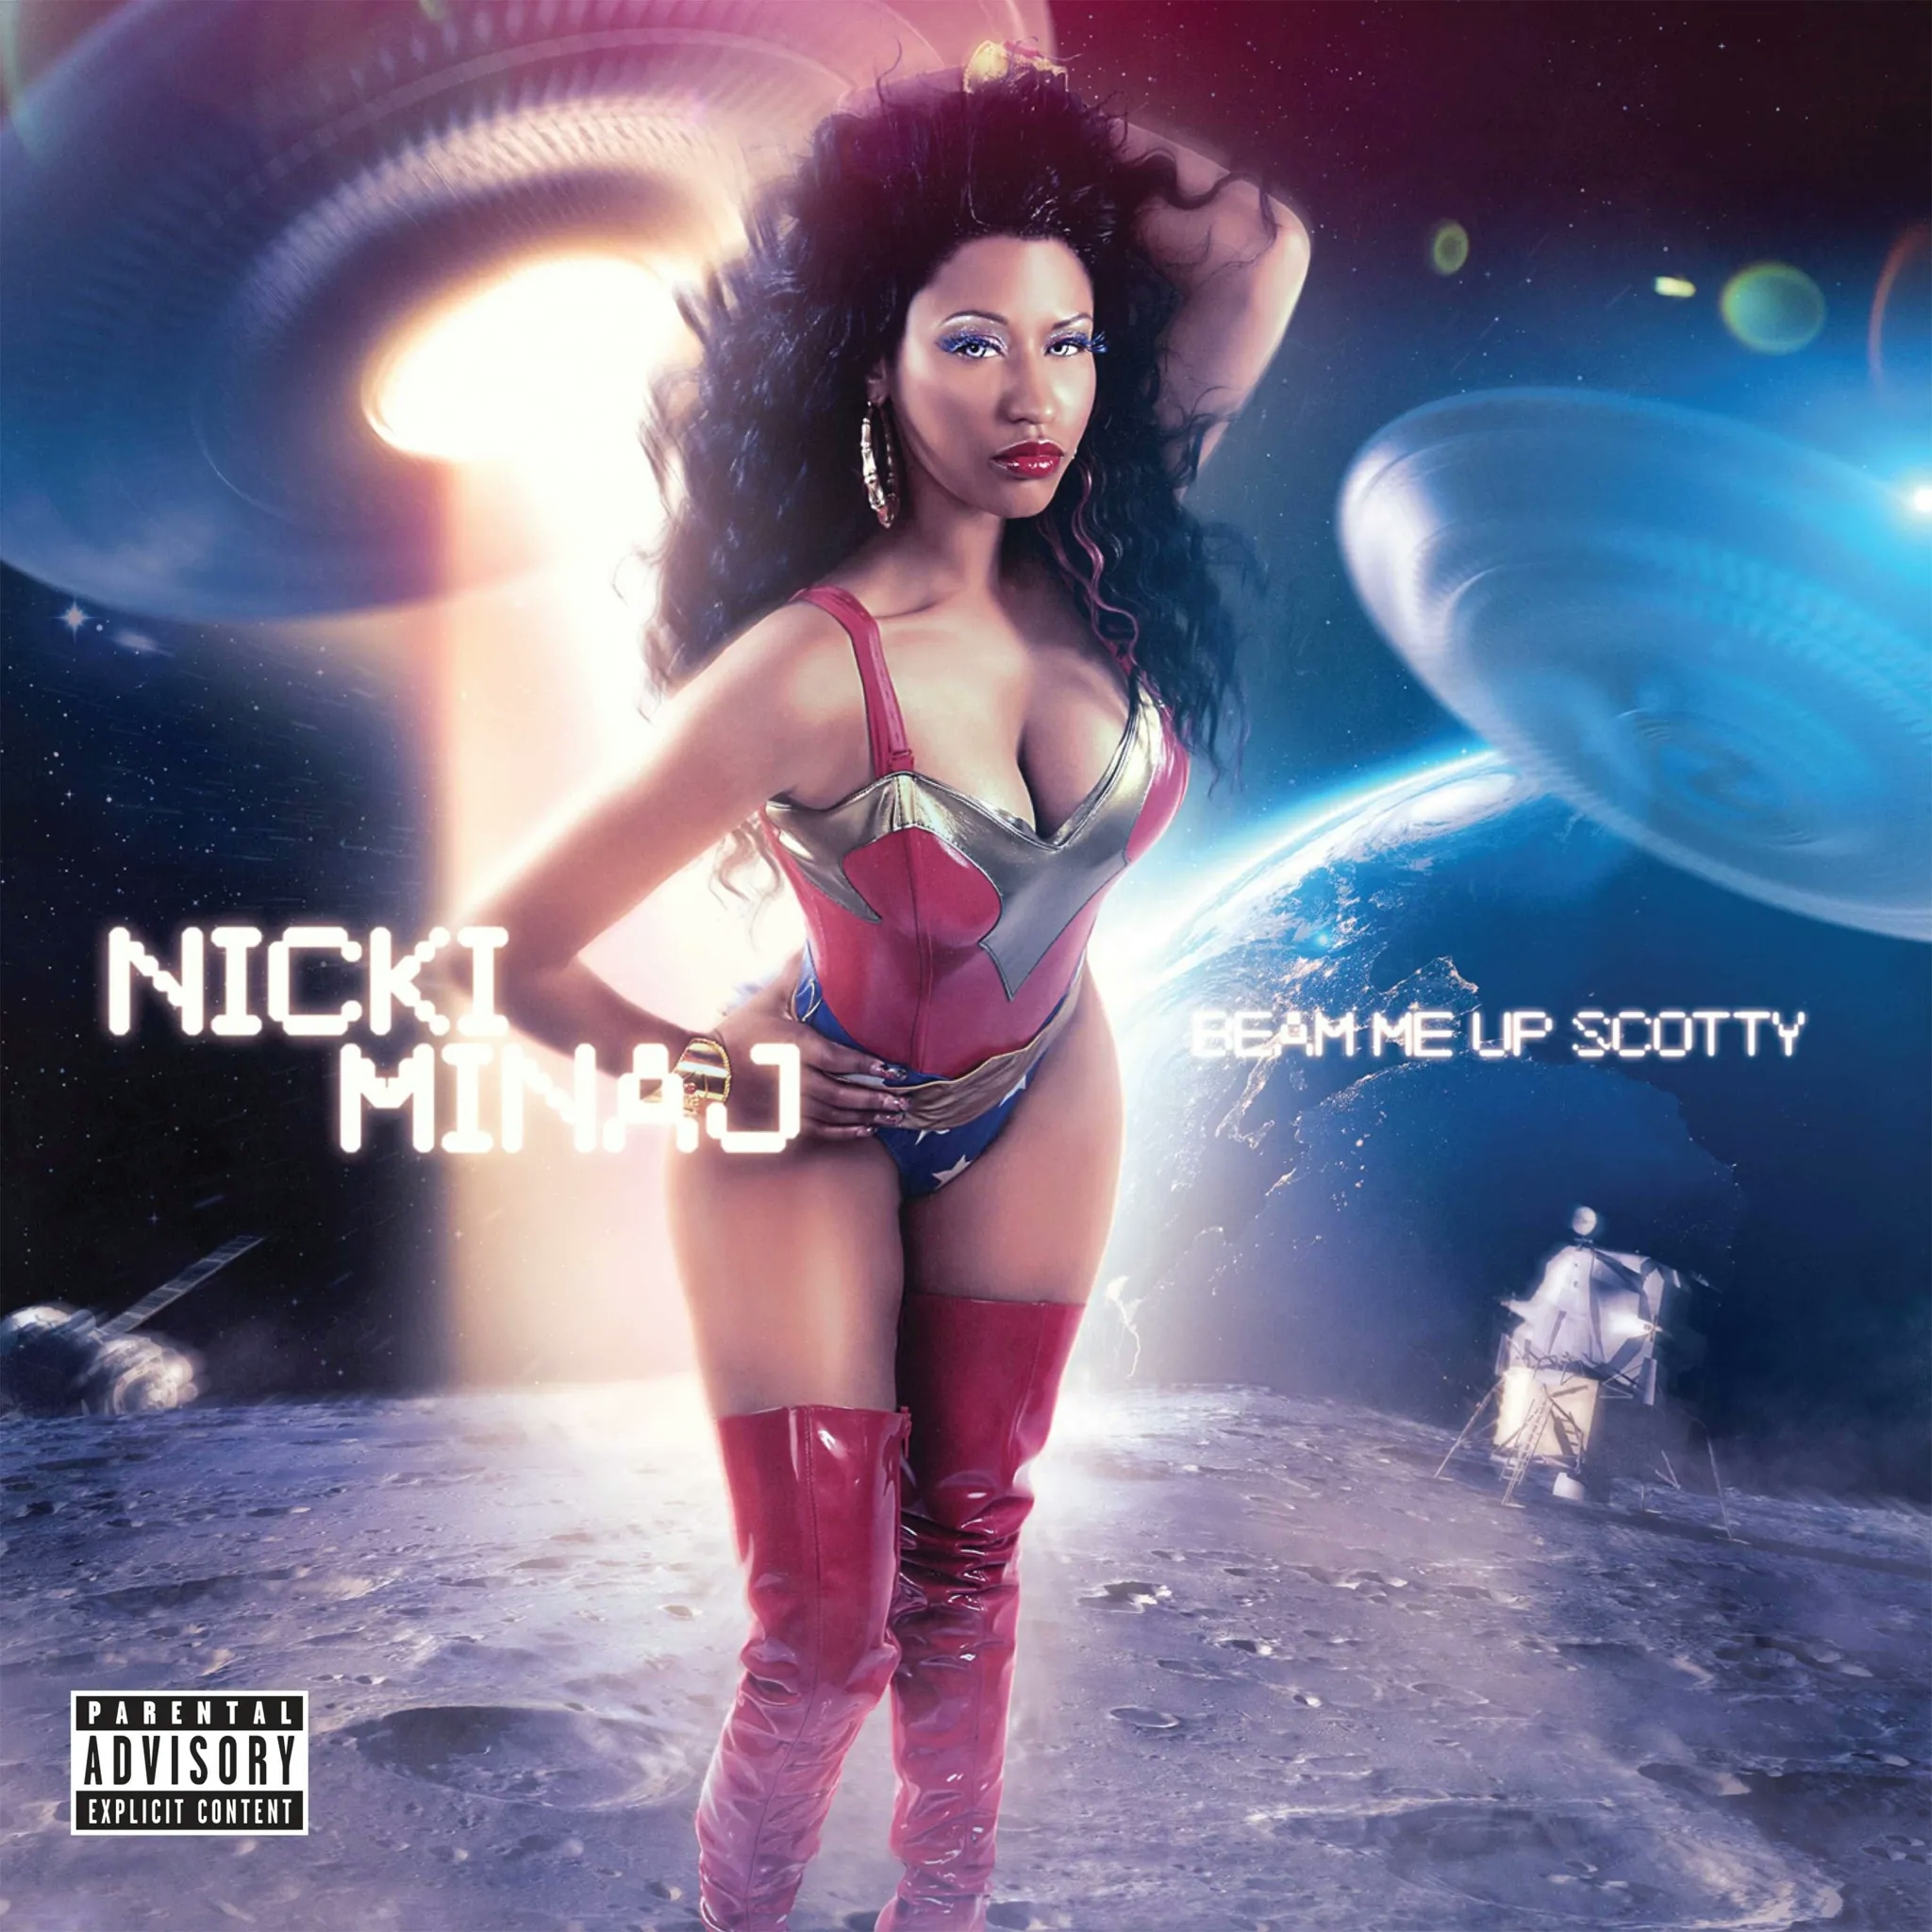 Album artwork for Album artwork for Beam Me Up Scotty by Nicki Minaj by Beam Me Up Scotty - Nicki Minaj